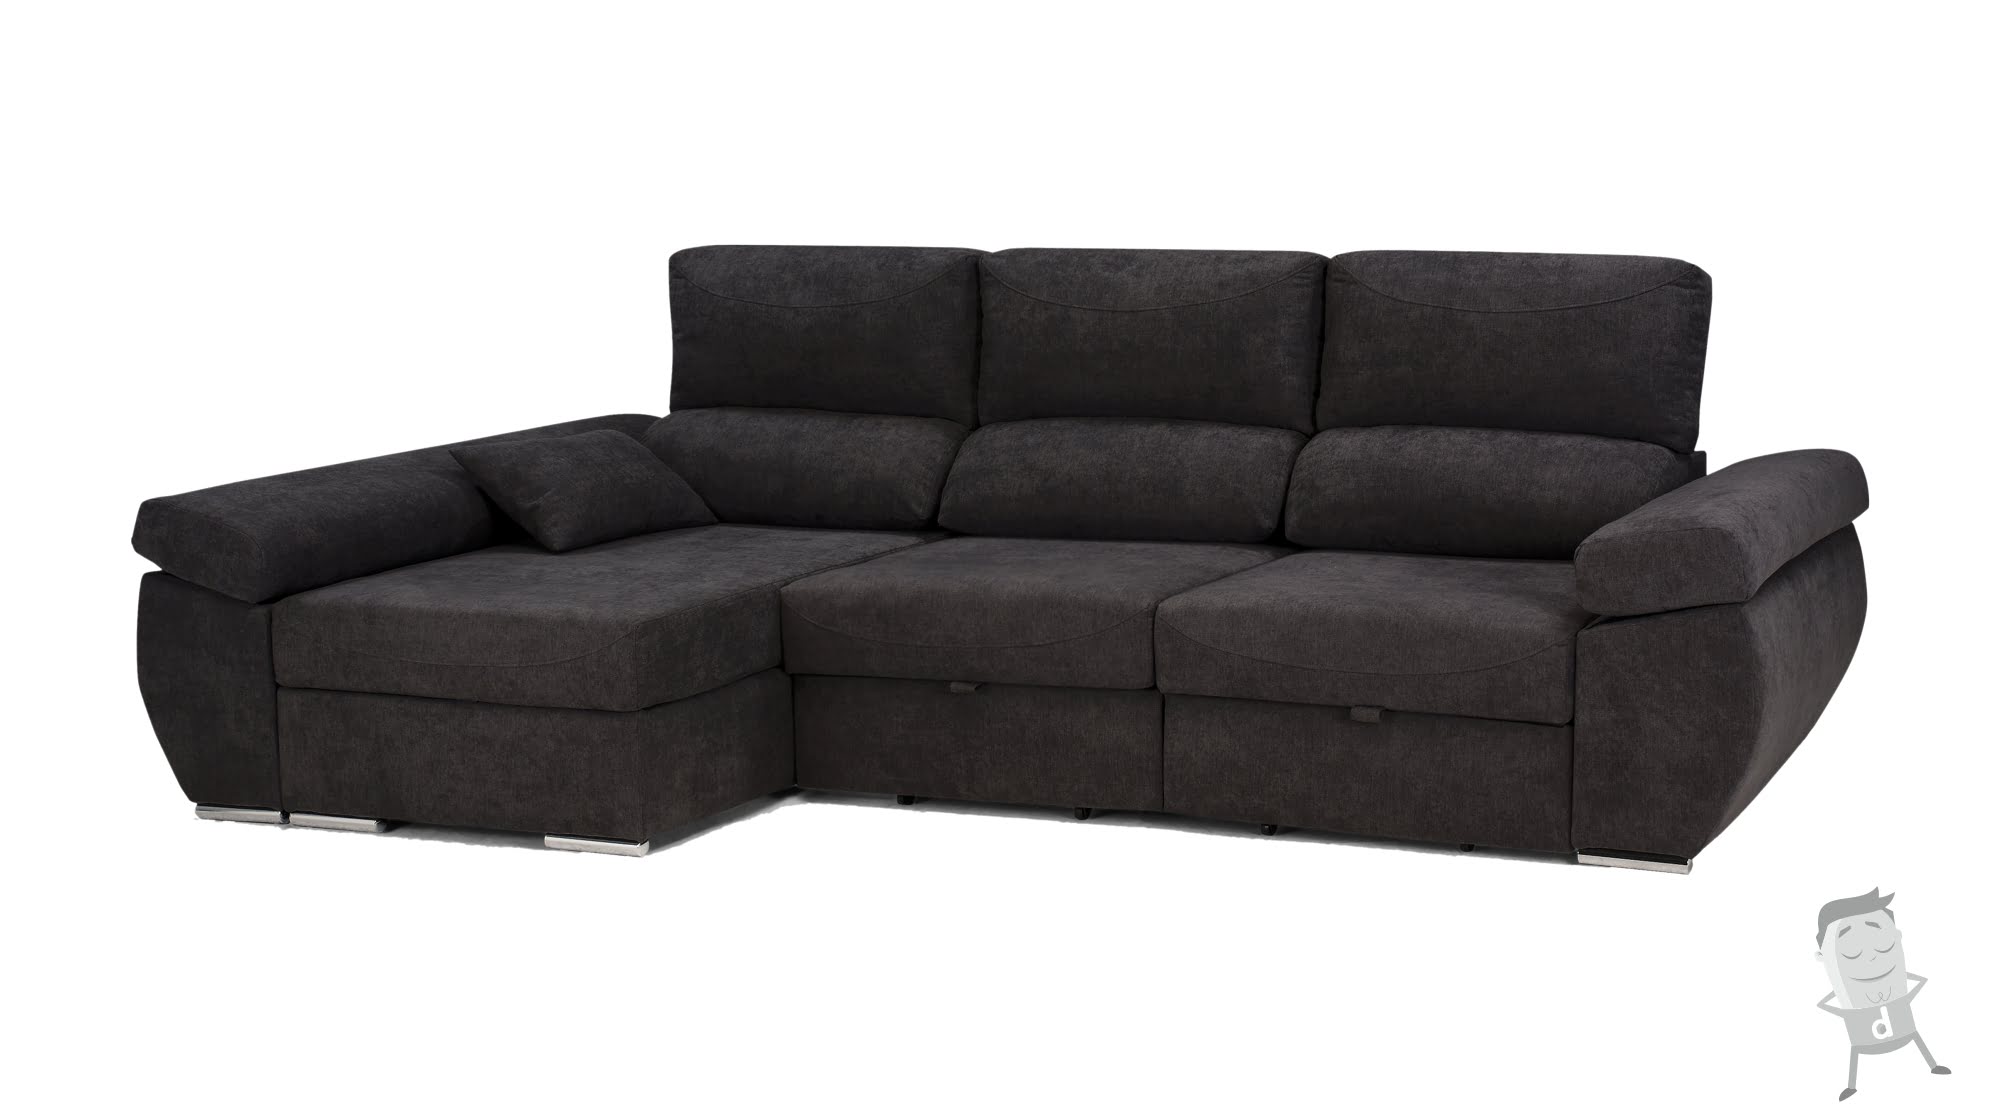 Sofa cama Chaise Longue Nivaria caracteristicas